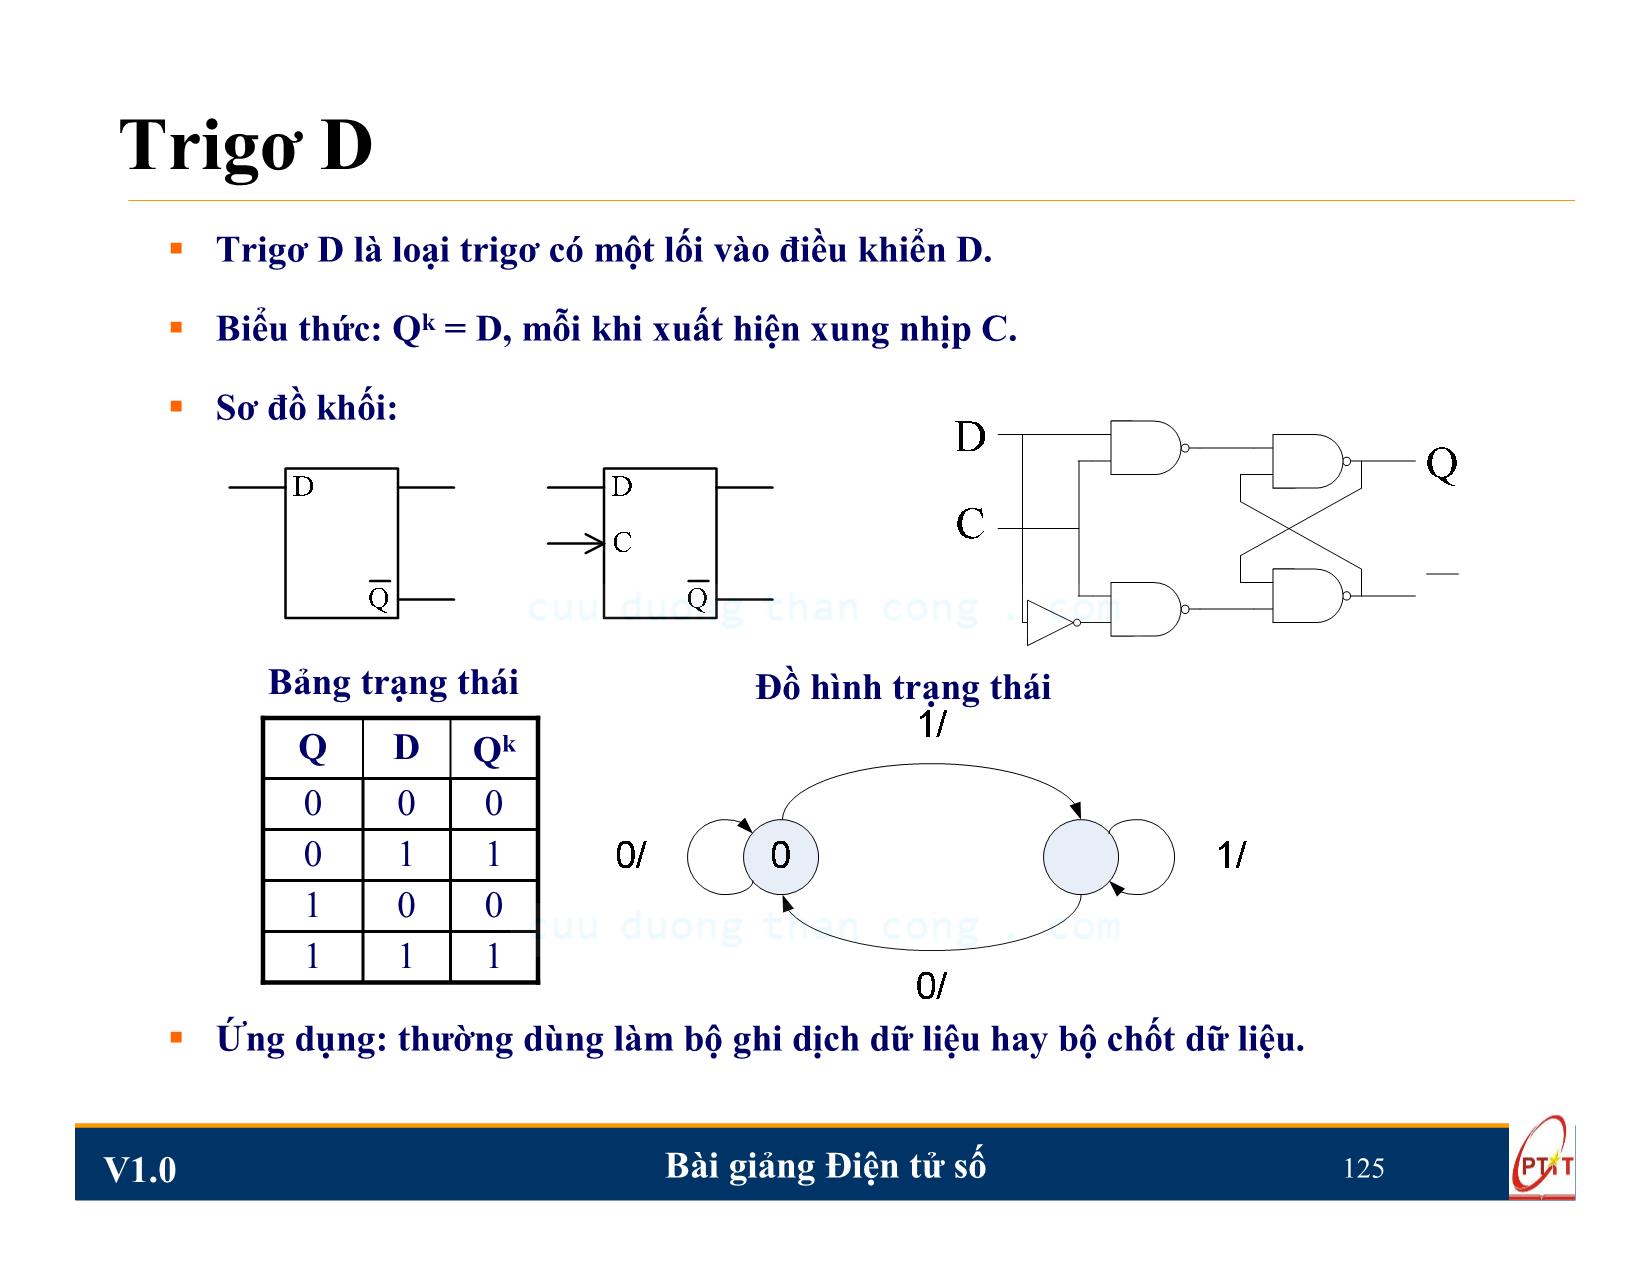 Bài giảng Điện tử số - Chương 5: Mạch logic tuần tự - Nguyễn Trung Hiếu trang 10